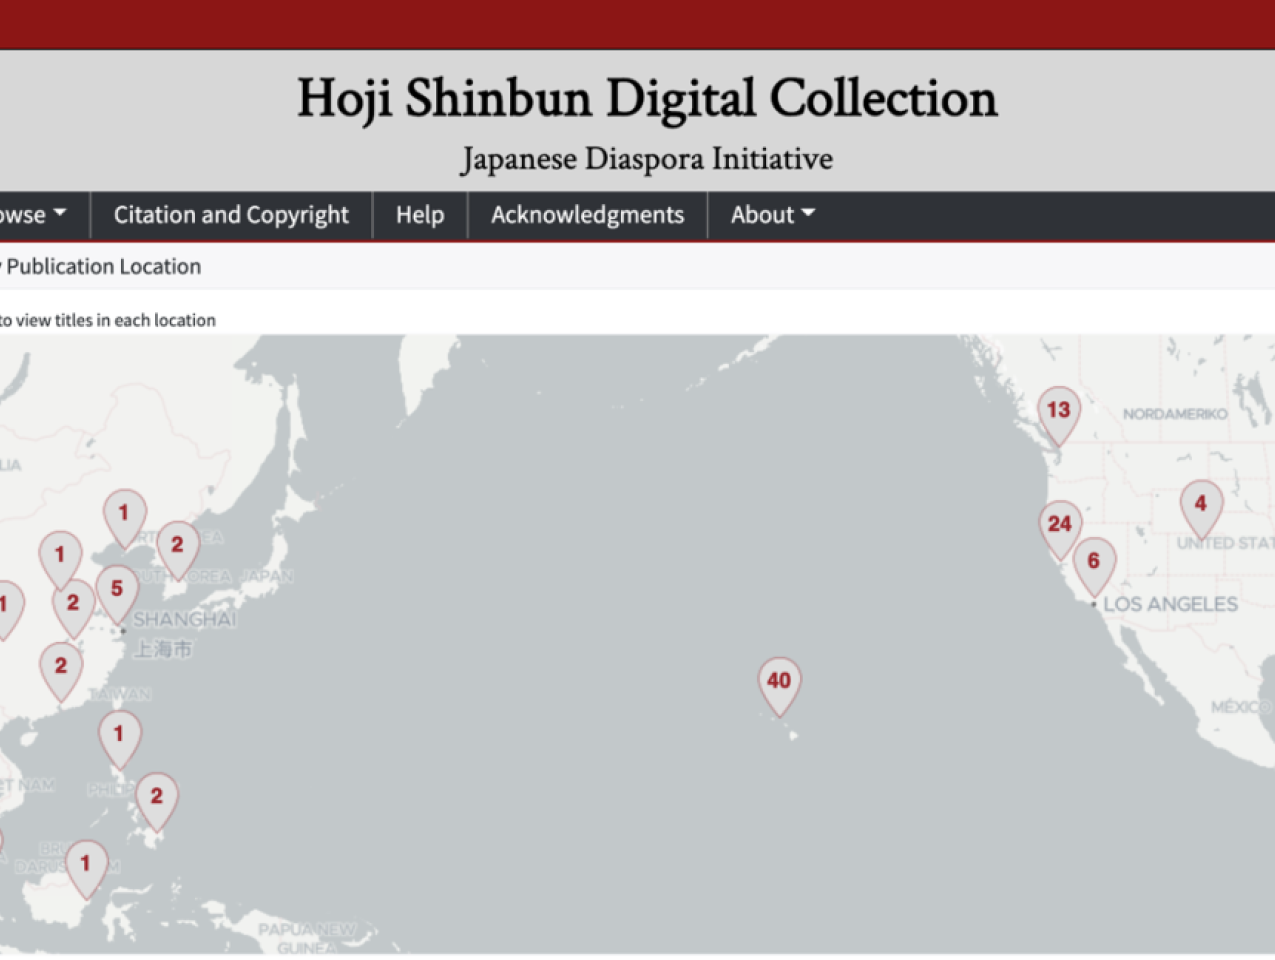 Hoji Shinbun Digital Collection